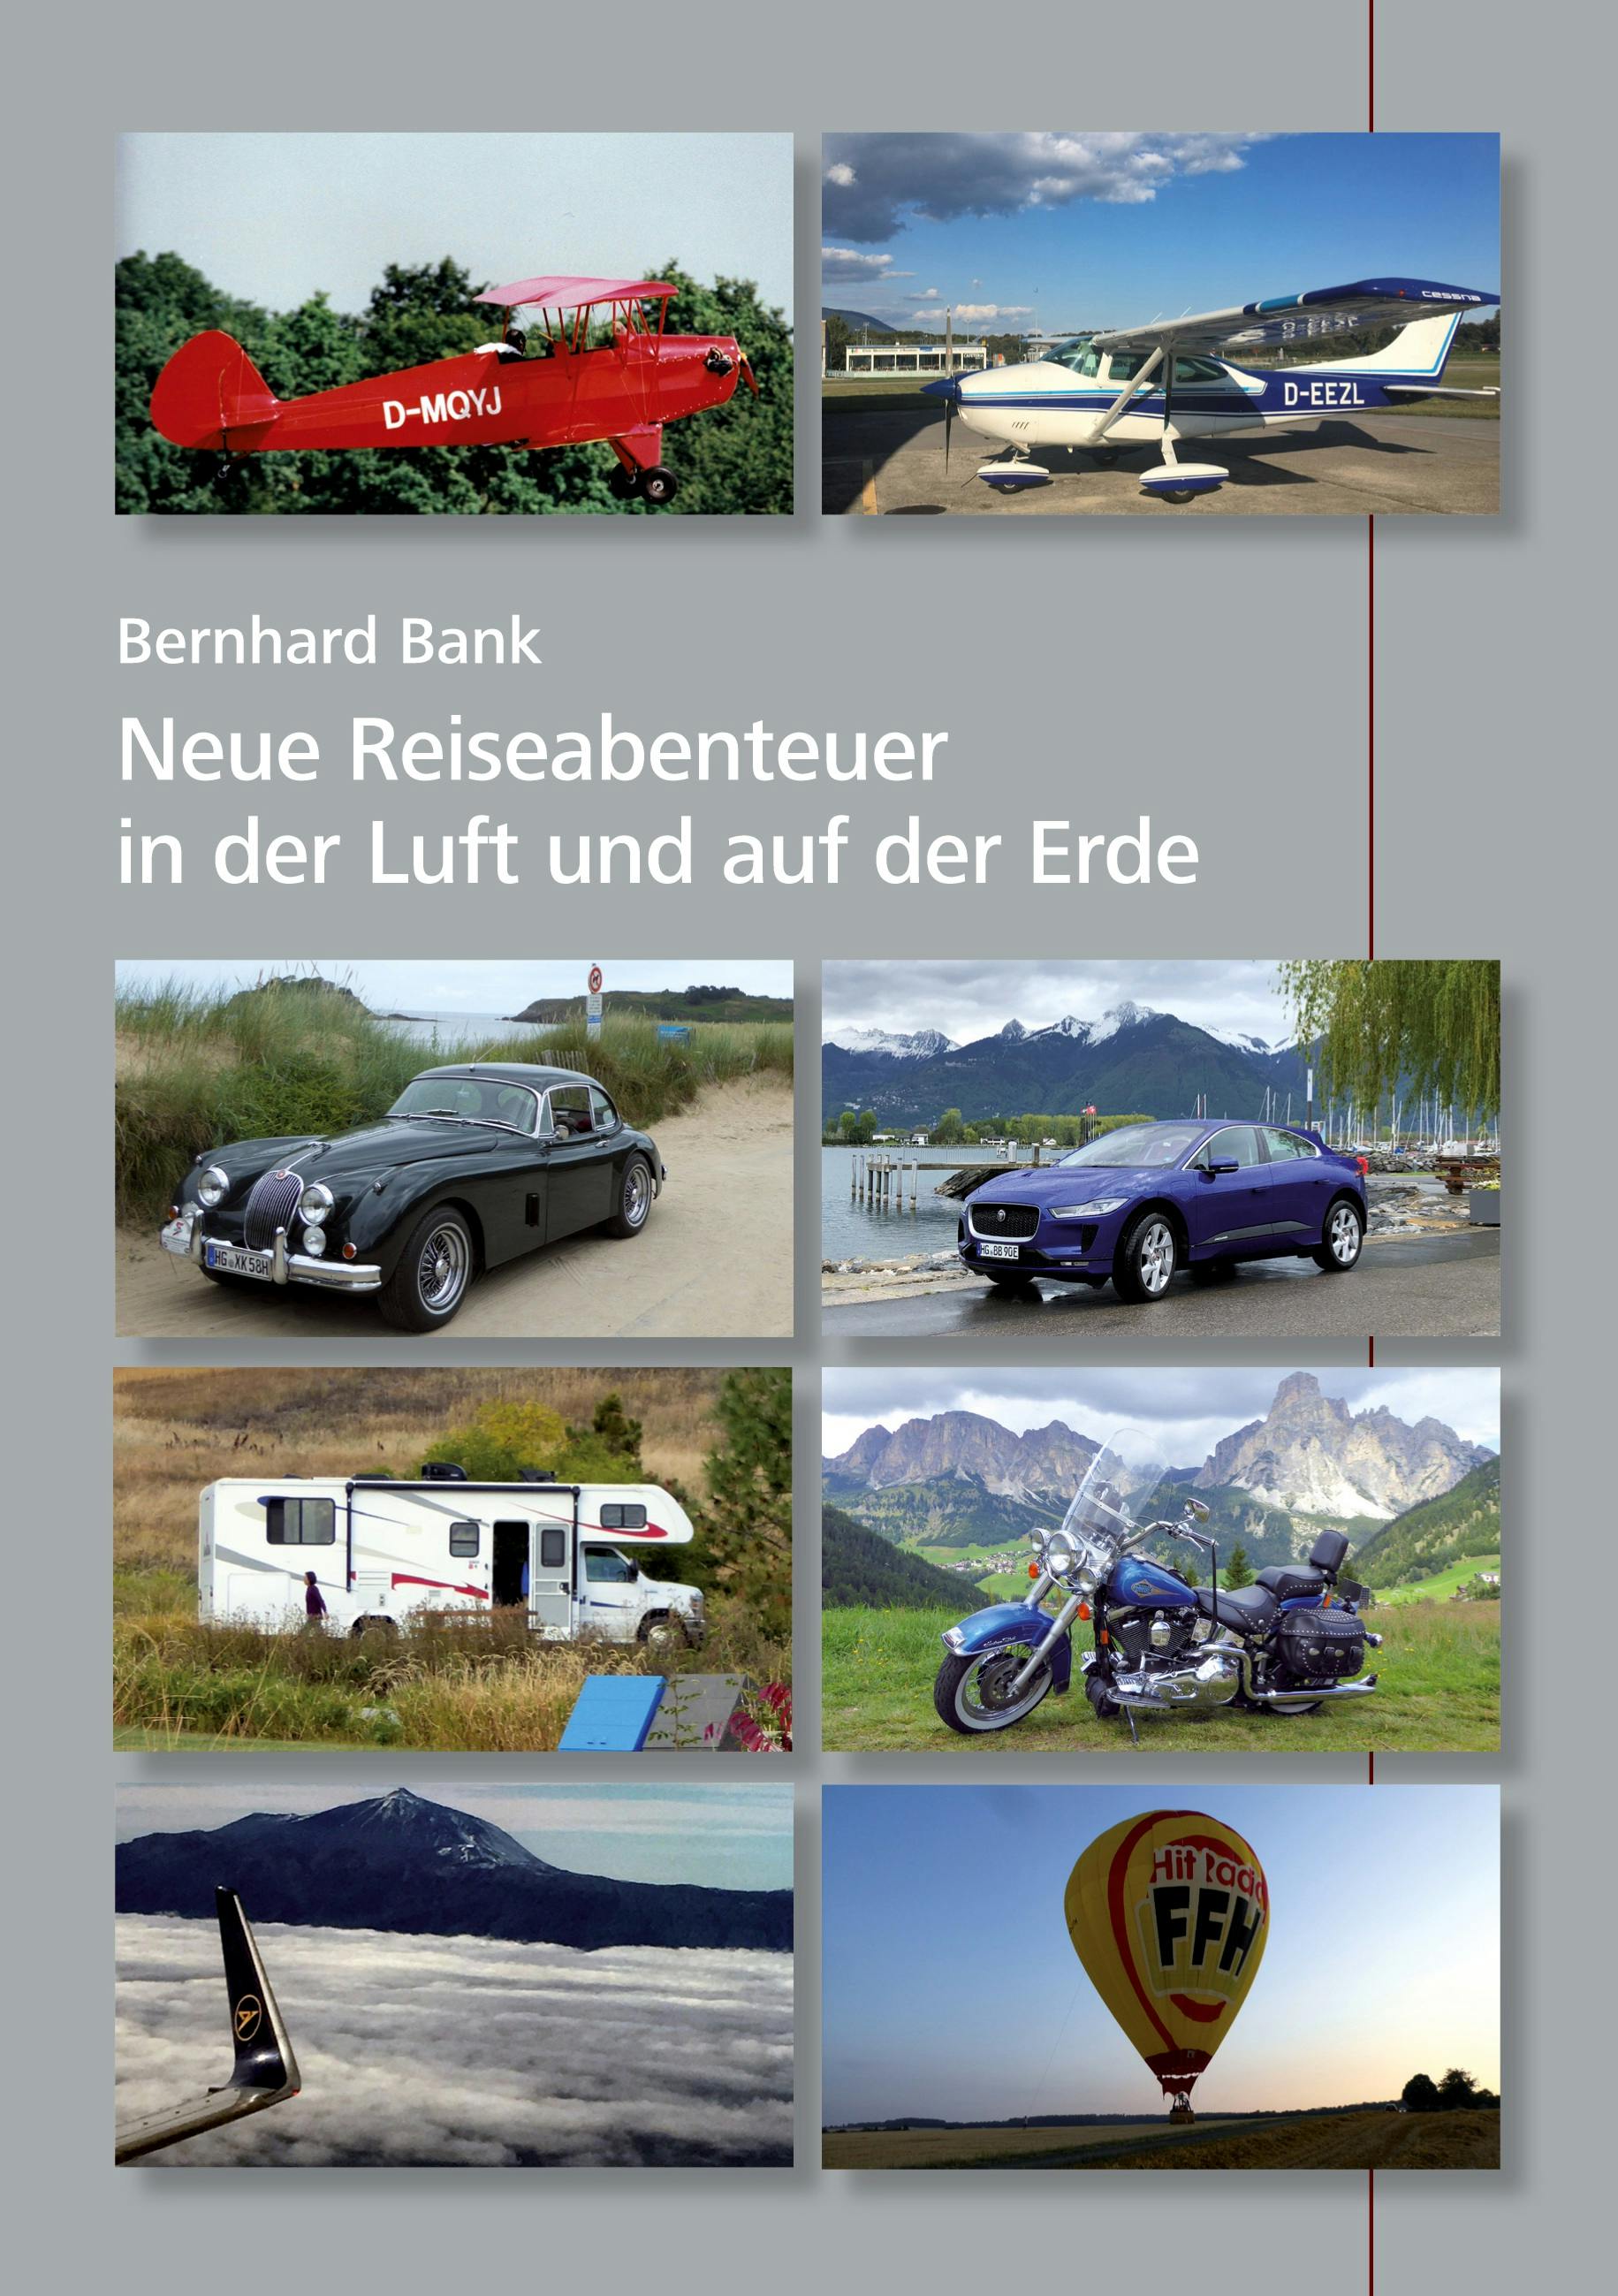 Neue Reiseabenteuer in der Luft und auf der Erde - Bernhard Bank